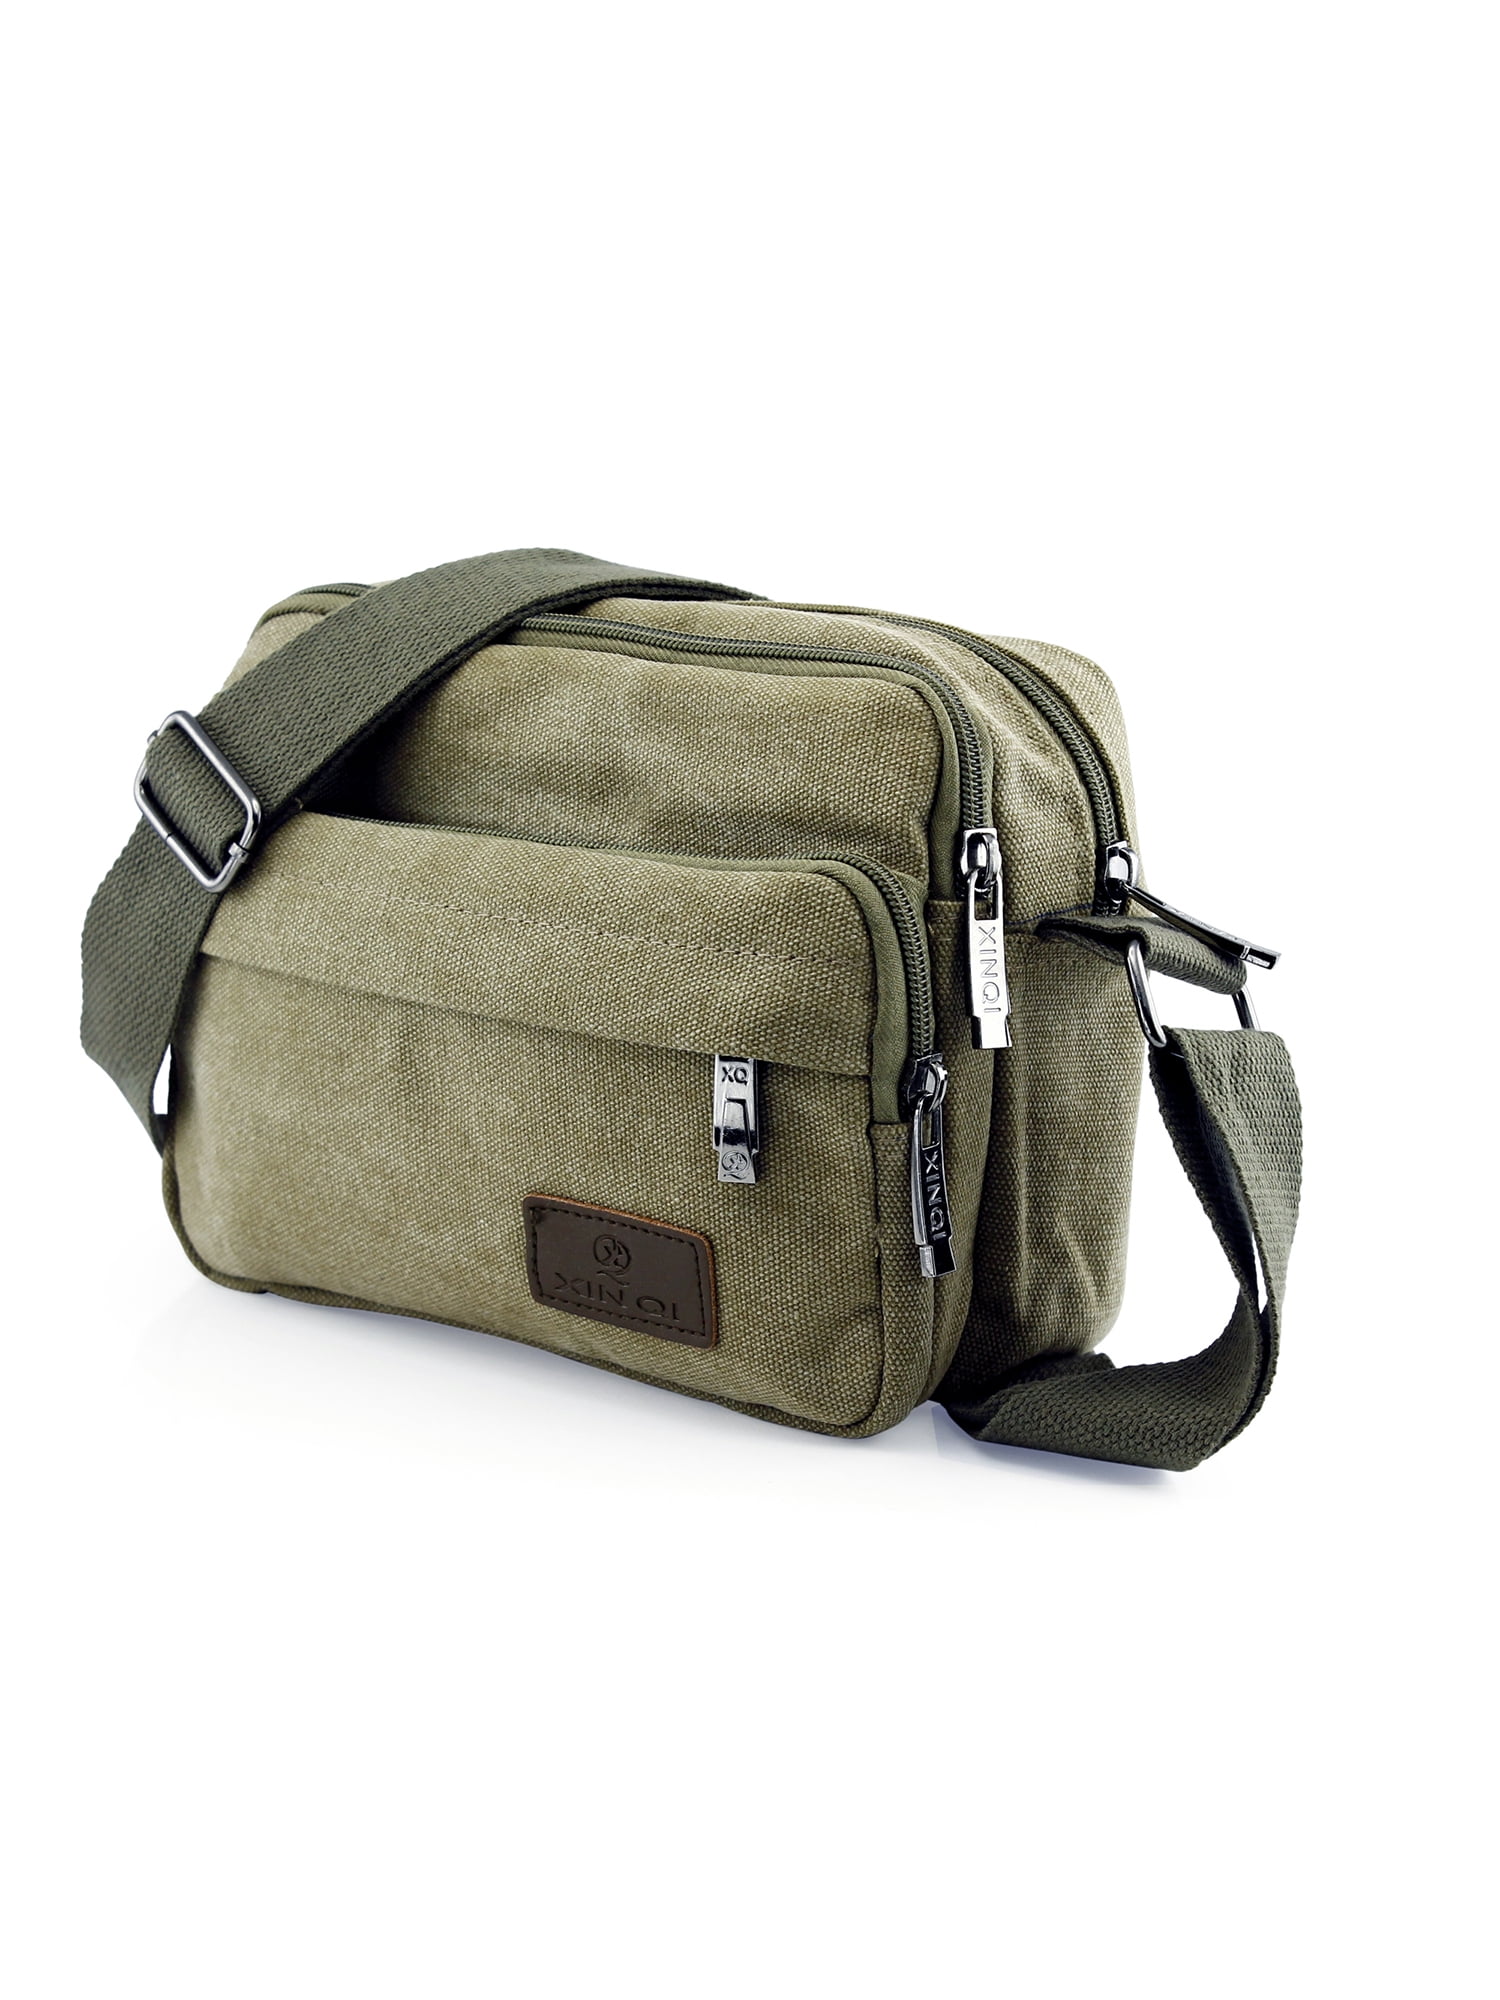 Canvas Messenger Bag, Men's Shoulder Bag With Acsergery Multiple Pocket, Vintage  Shoulder Gift